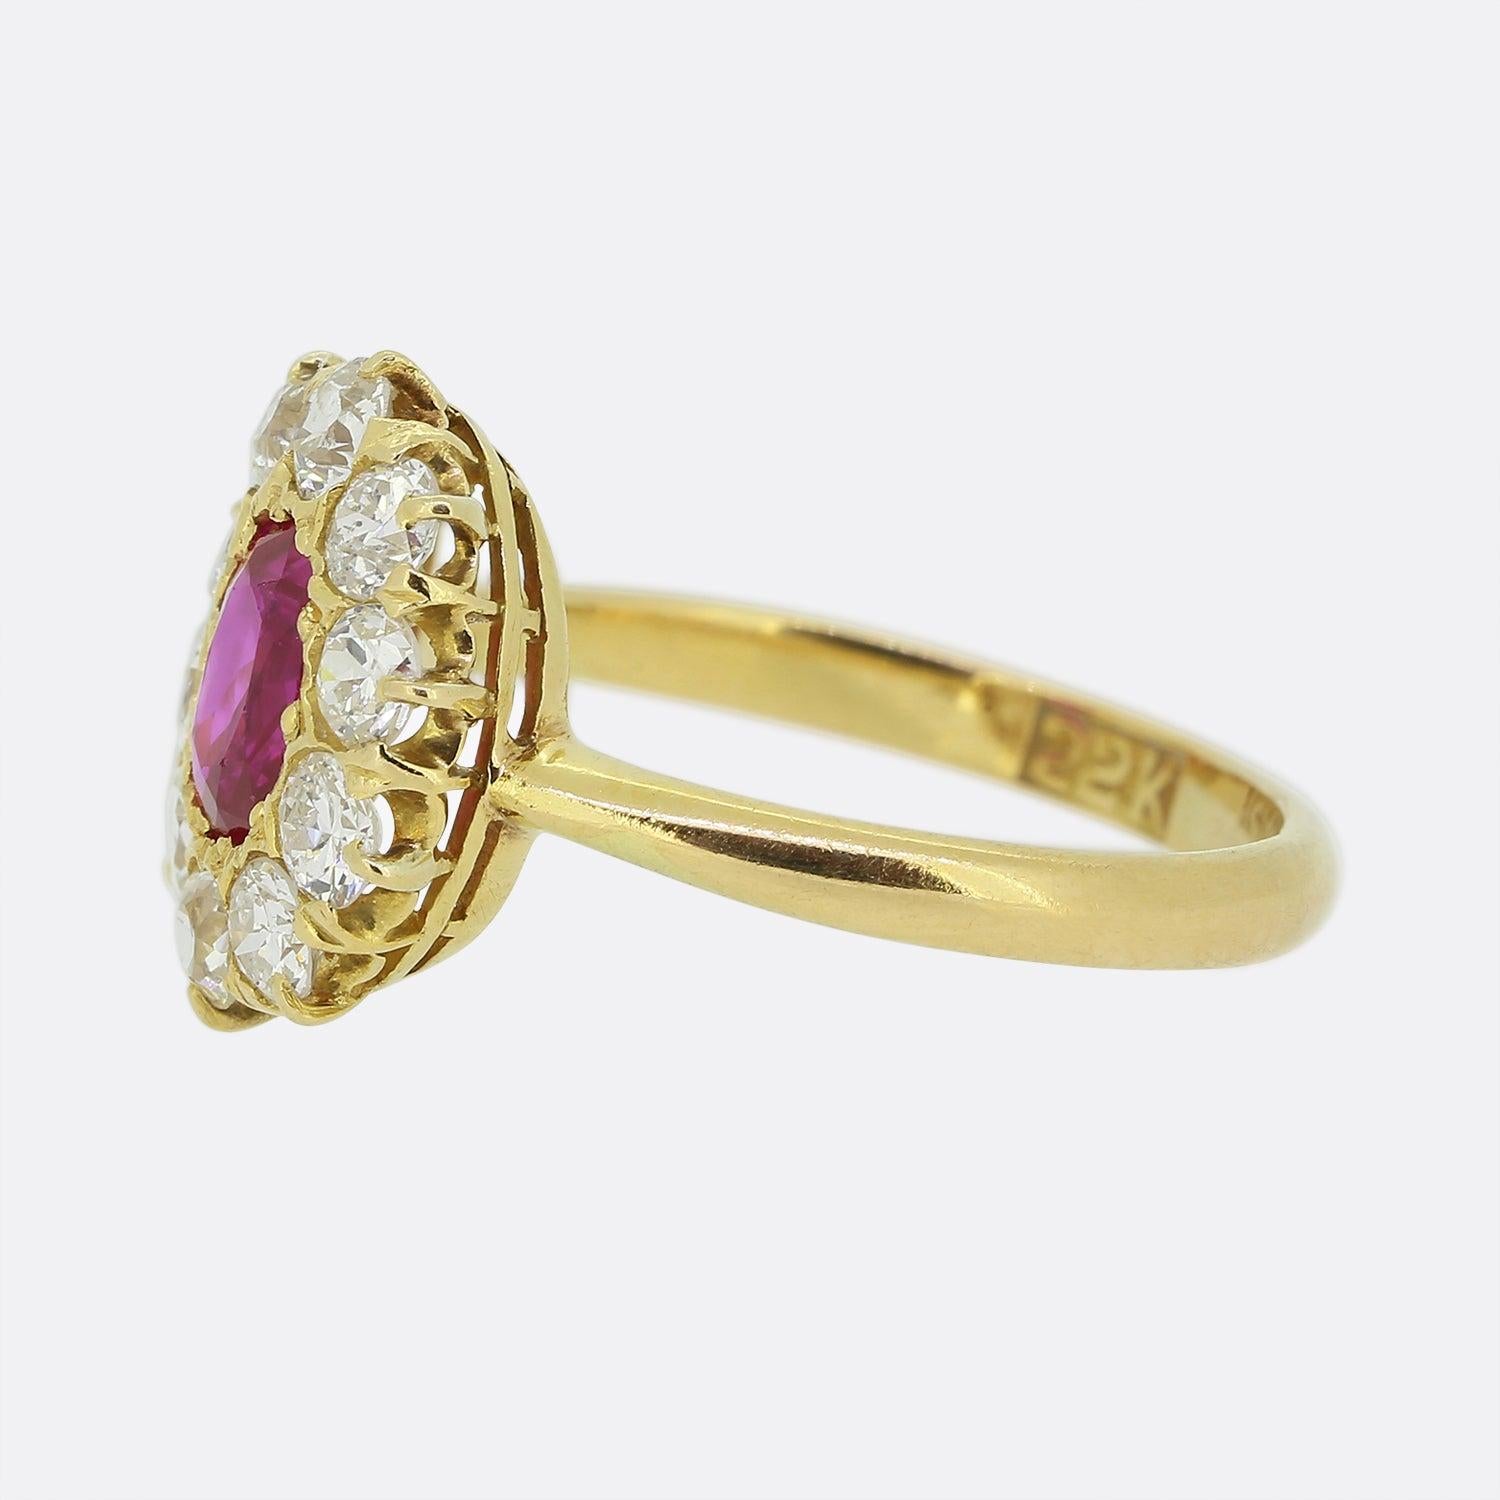 Hier haben wir einen fabelhaften Rubin- und Diamant-Cluster-Ring. In der Mitte dieses Vintage-Stücks befindet sich ein einzelner ovaler, natürlicher burmesischer Rubin, der eine leuchtend rote Farbe mit einem leichten rosa Unterton besitzt. Dieser